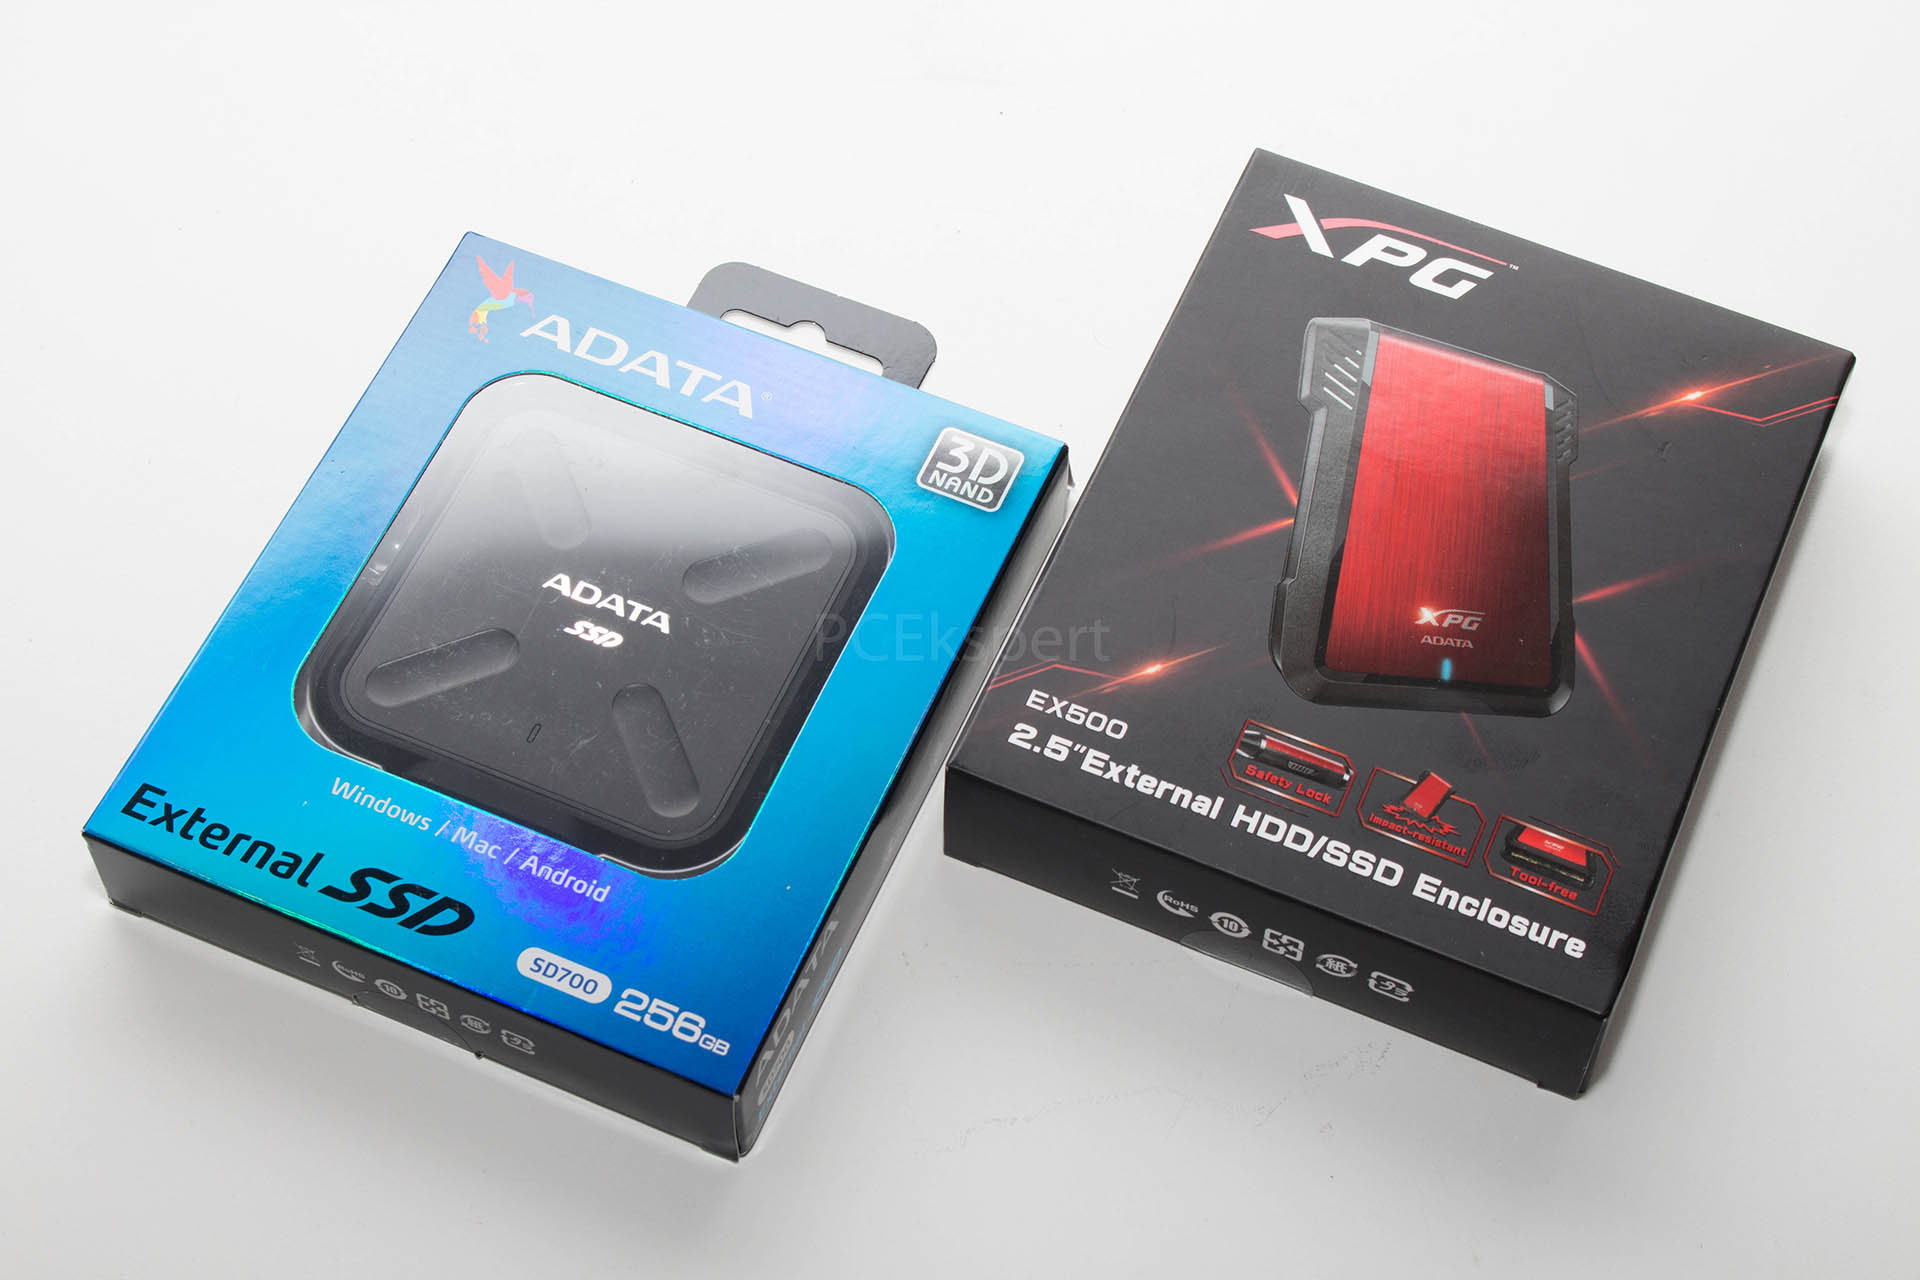 Brzi test – ADATA SD700 256 GB & XPG EX500